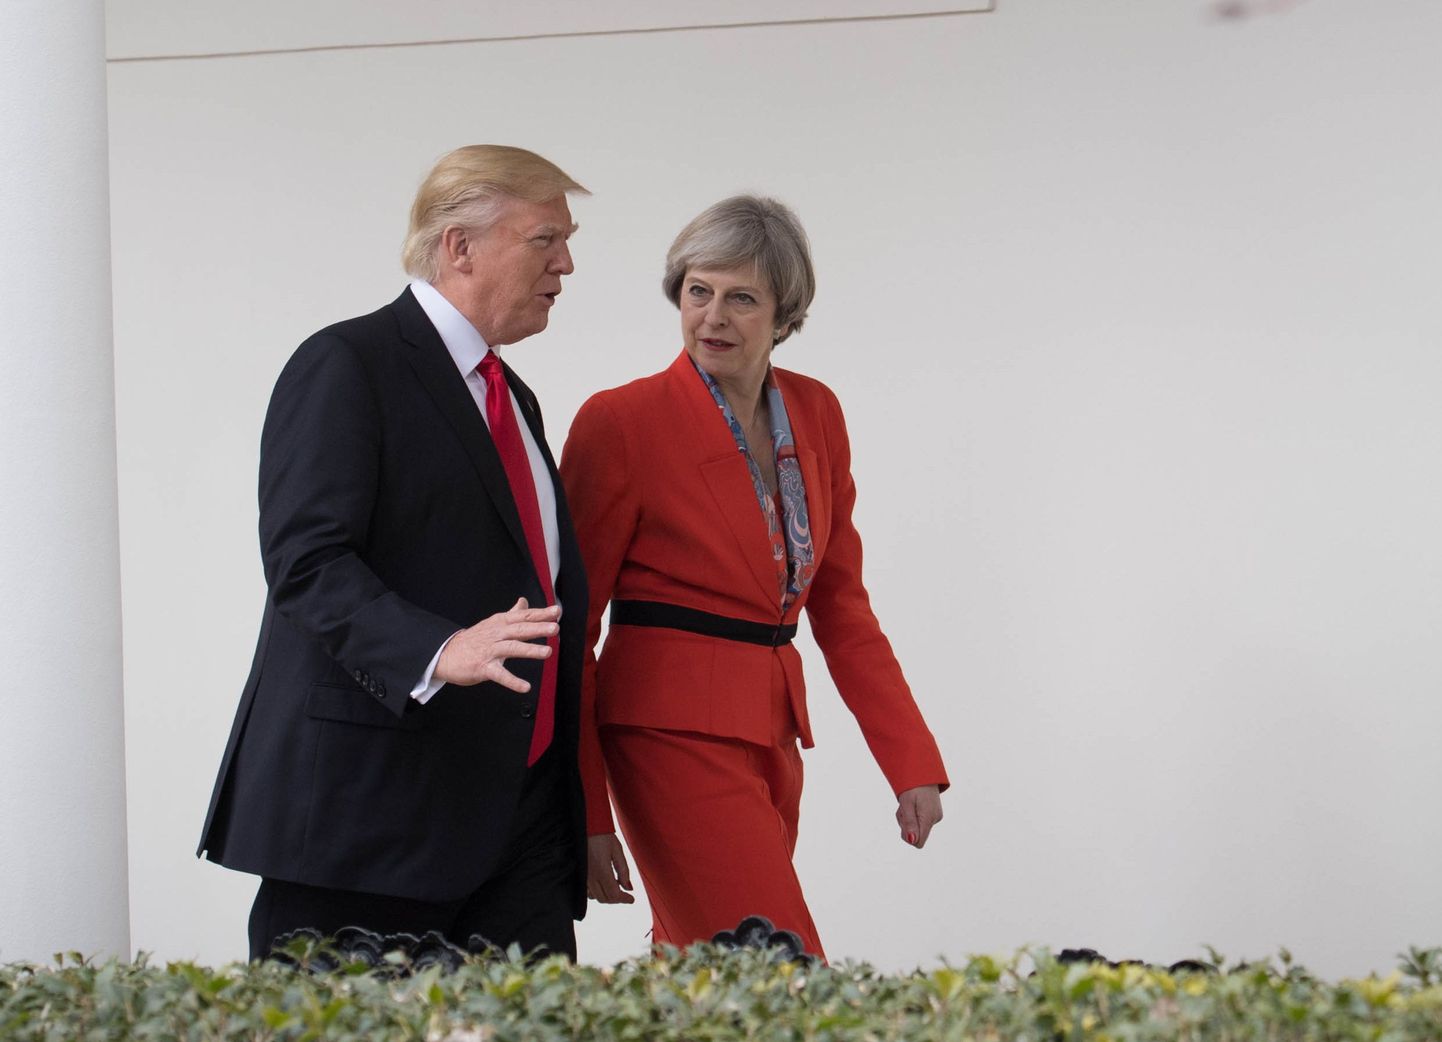 Briti peaminister Theresa May kohtumas USA presidendi Donald Trumpiga.